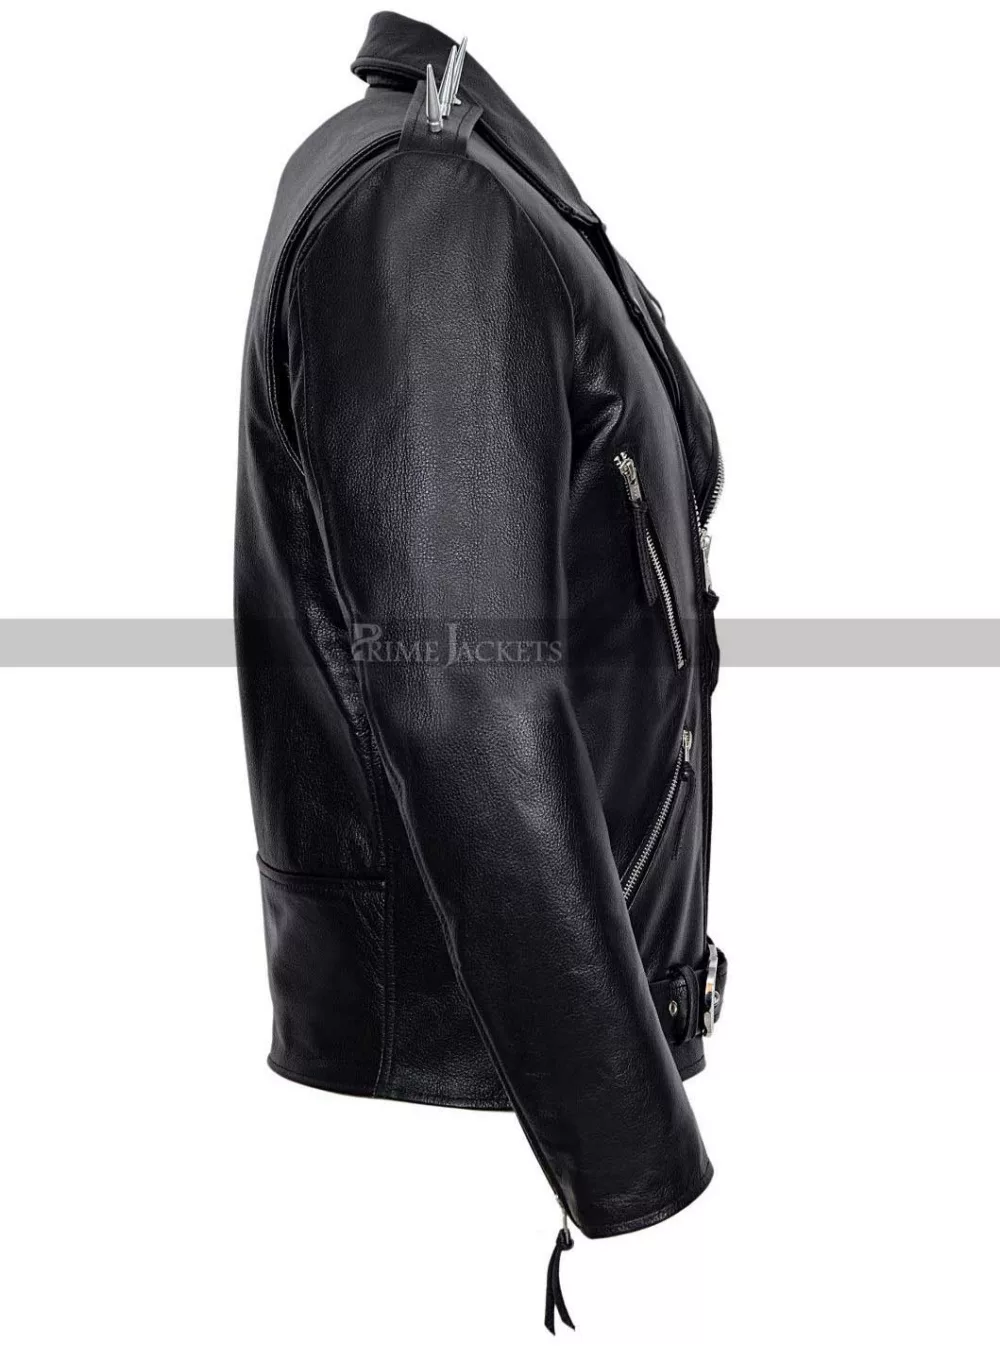 Nicolas Cage Ghost Rider Motorcycle Jacket